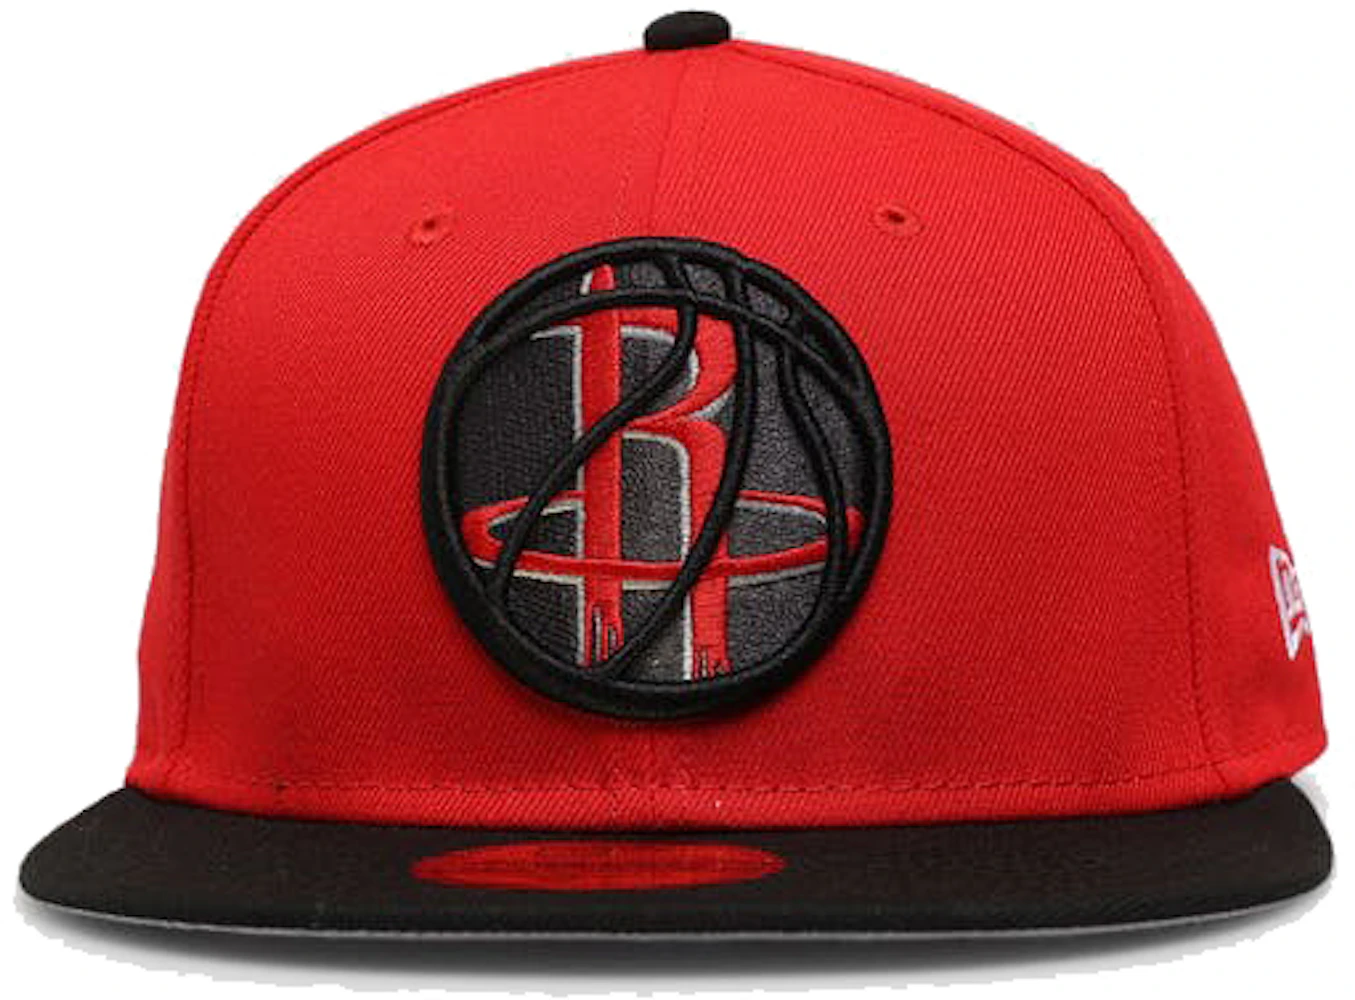 NBA Men's Hat - Red